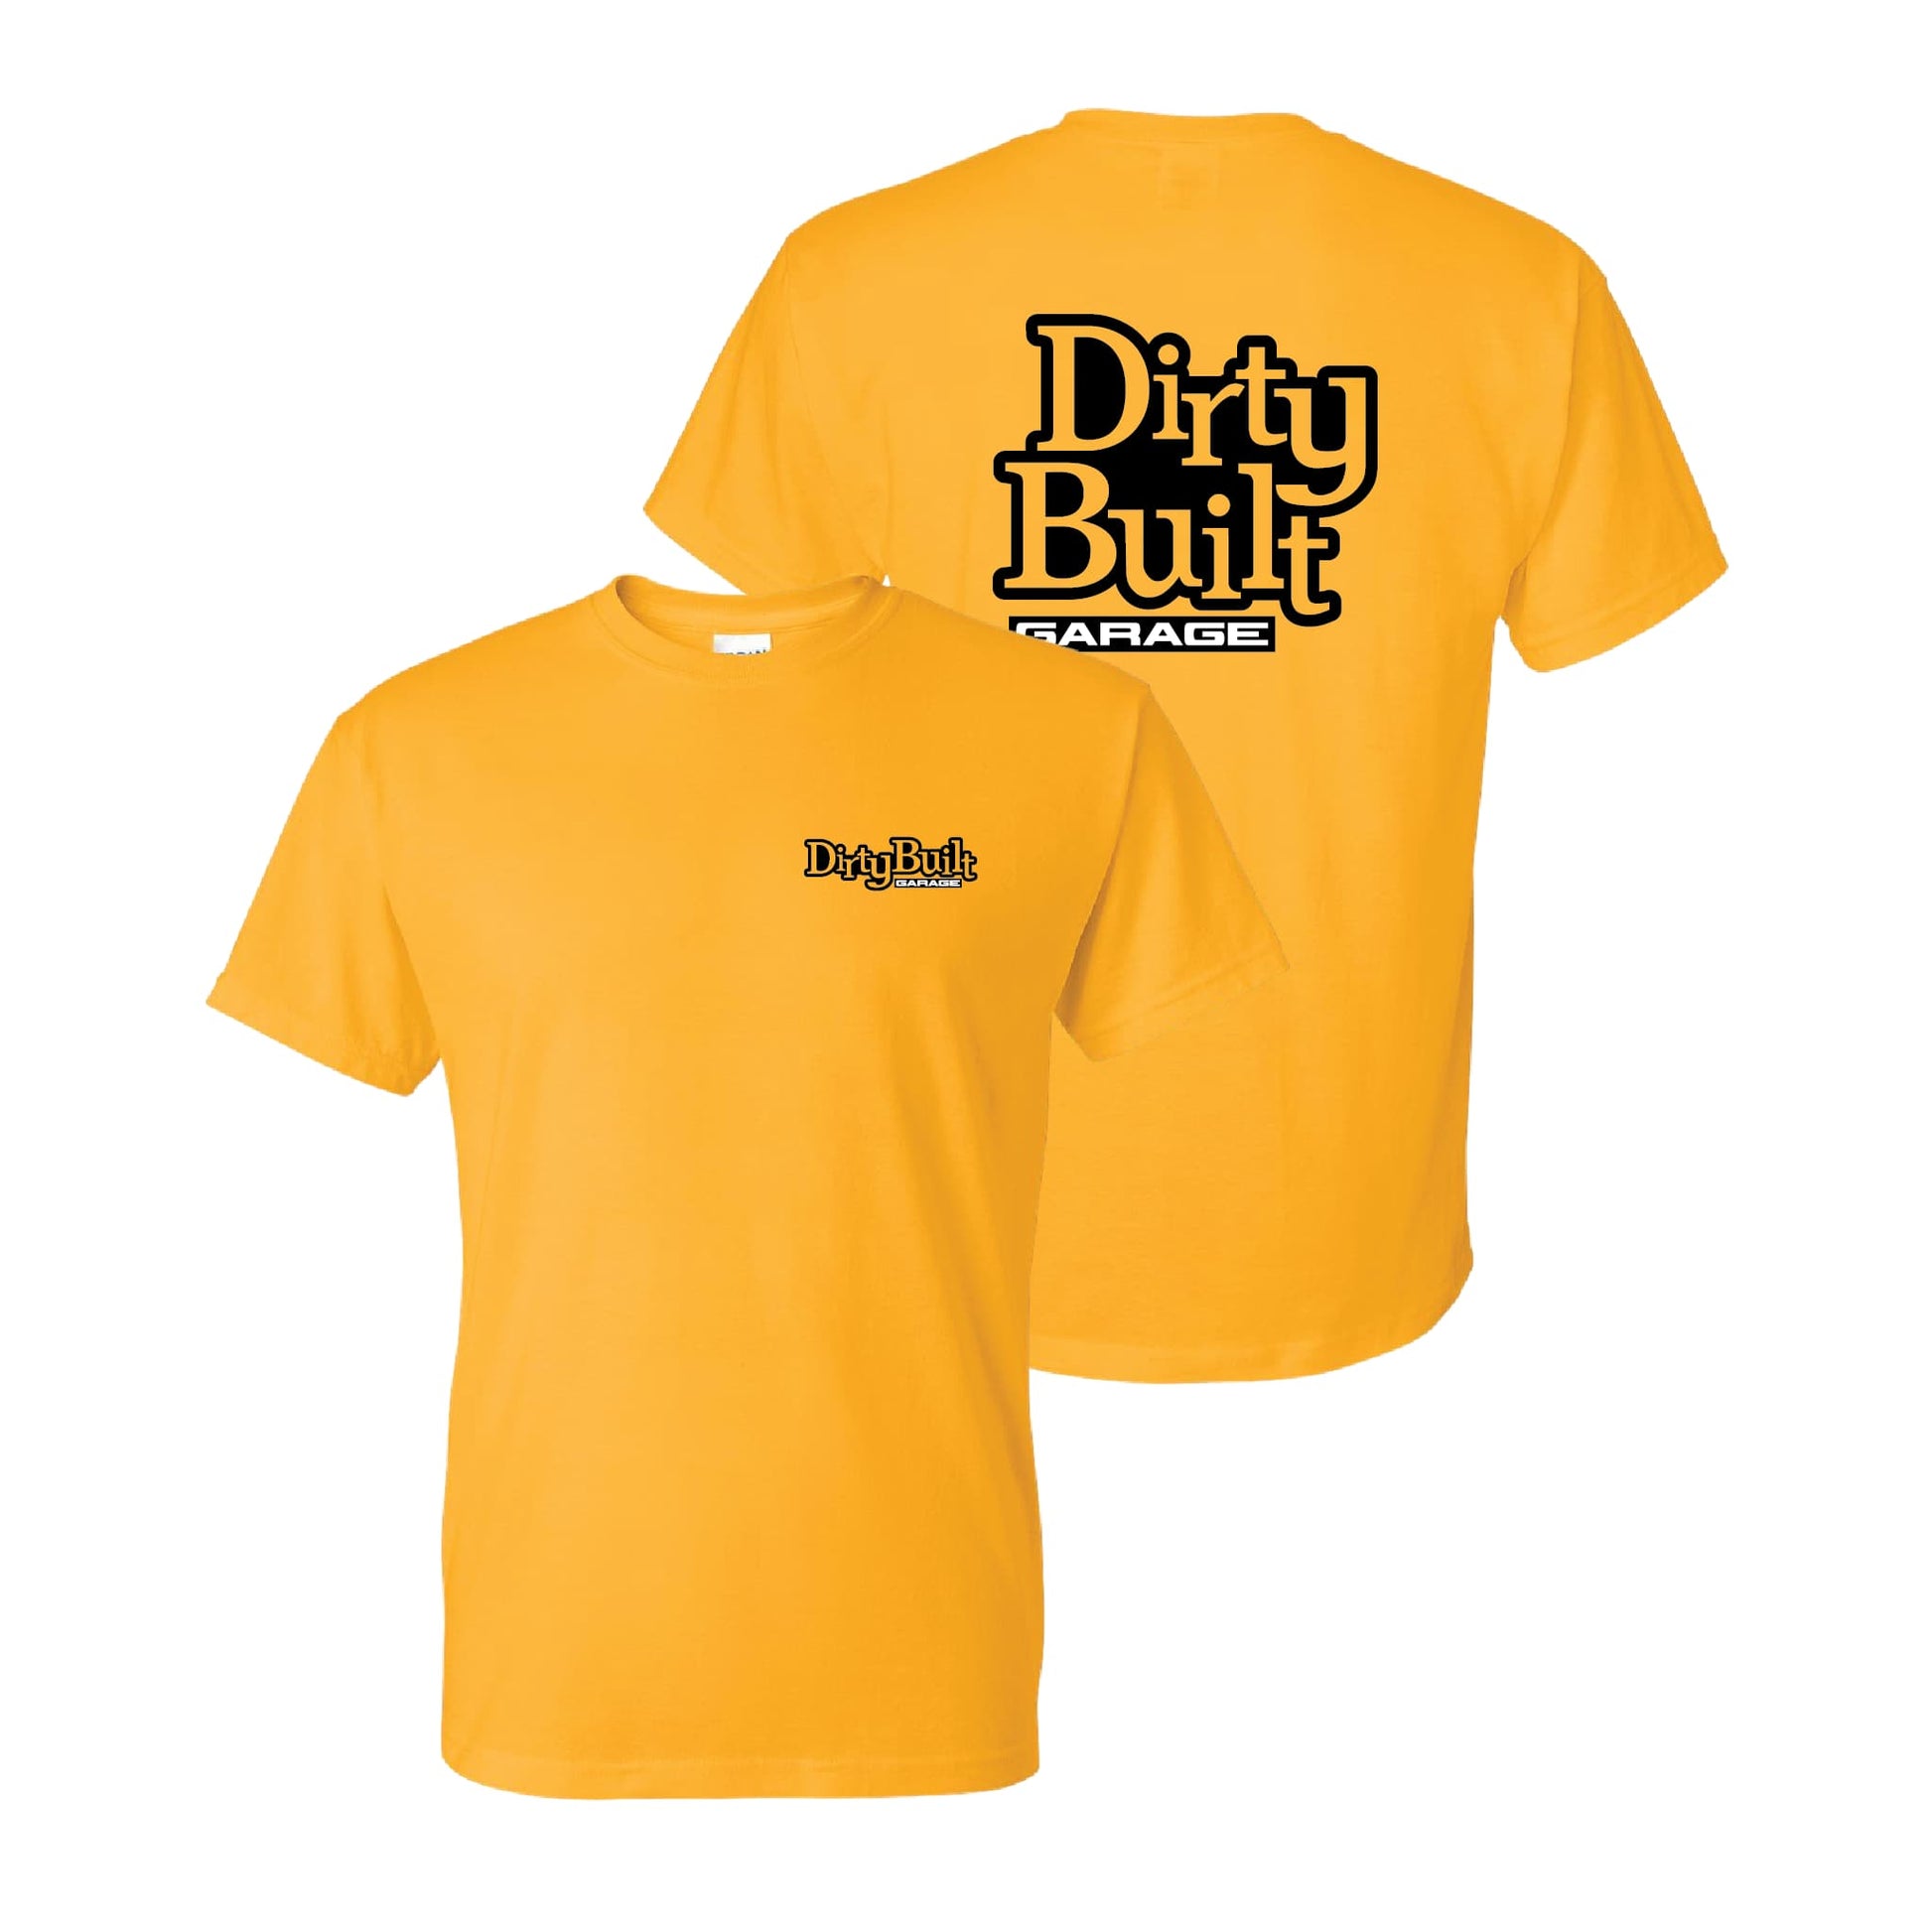 Dirty-Built-Garage-Shirt-Gold-4